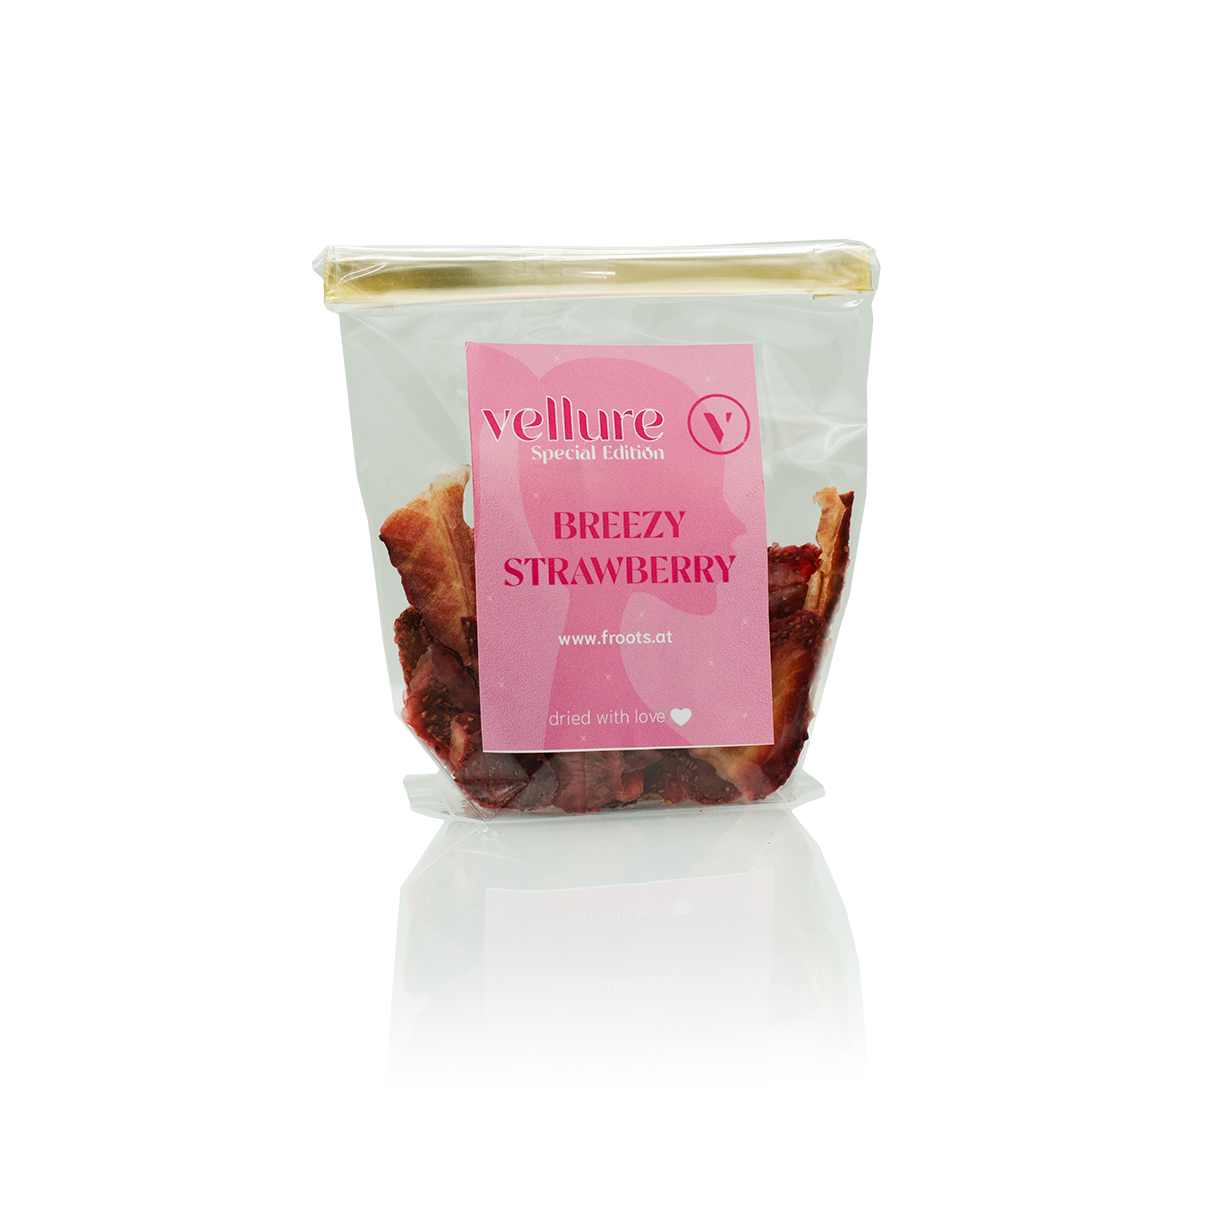 Durchsichtiges Cellophan Sackerl mit goldener Verschlussklammer und rosarotem Etikett der special Edition Erdbeer-Froots.